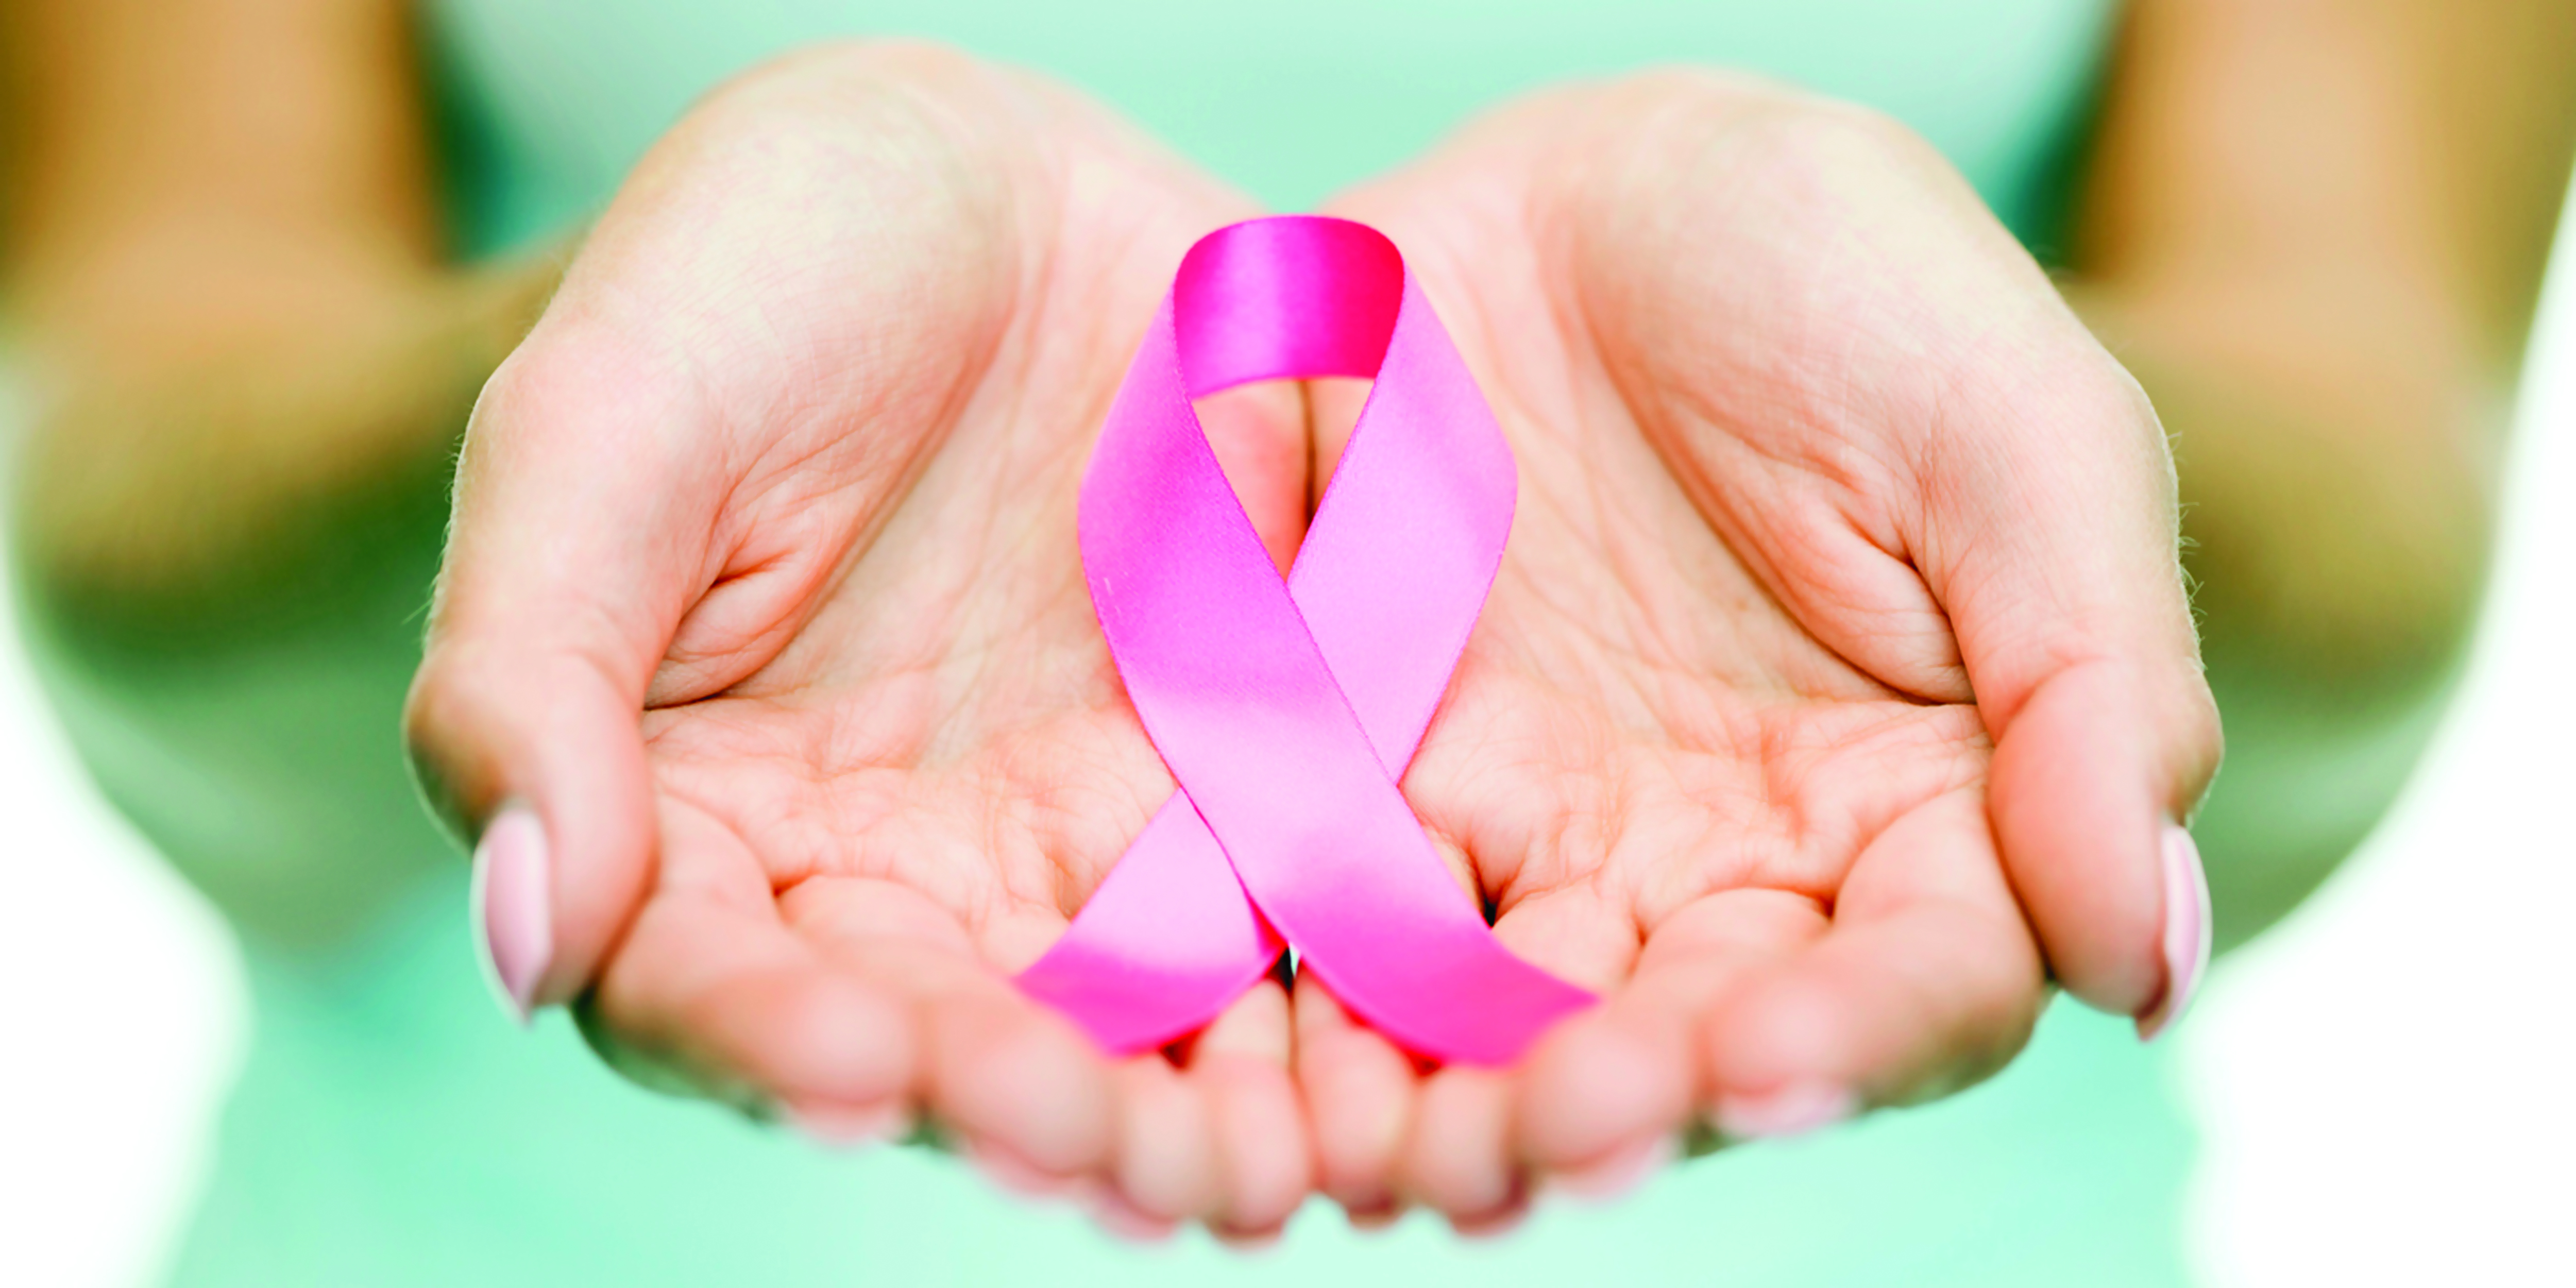 القضاء على سرطان الثدي في 11 يوما